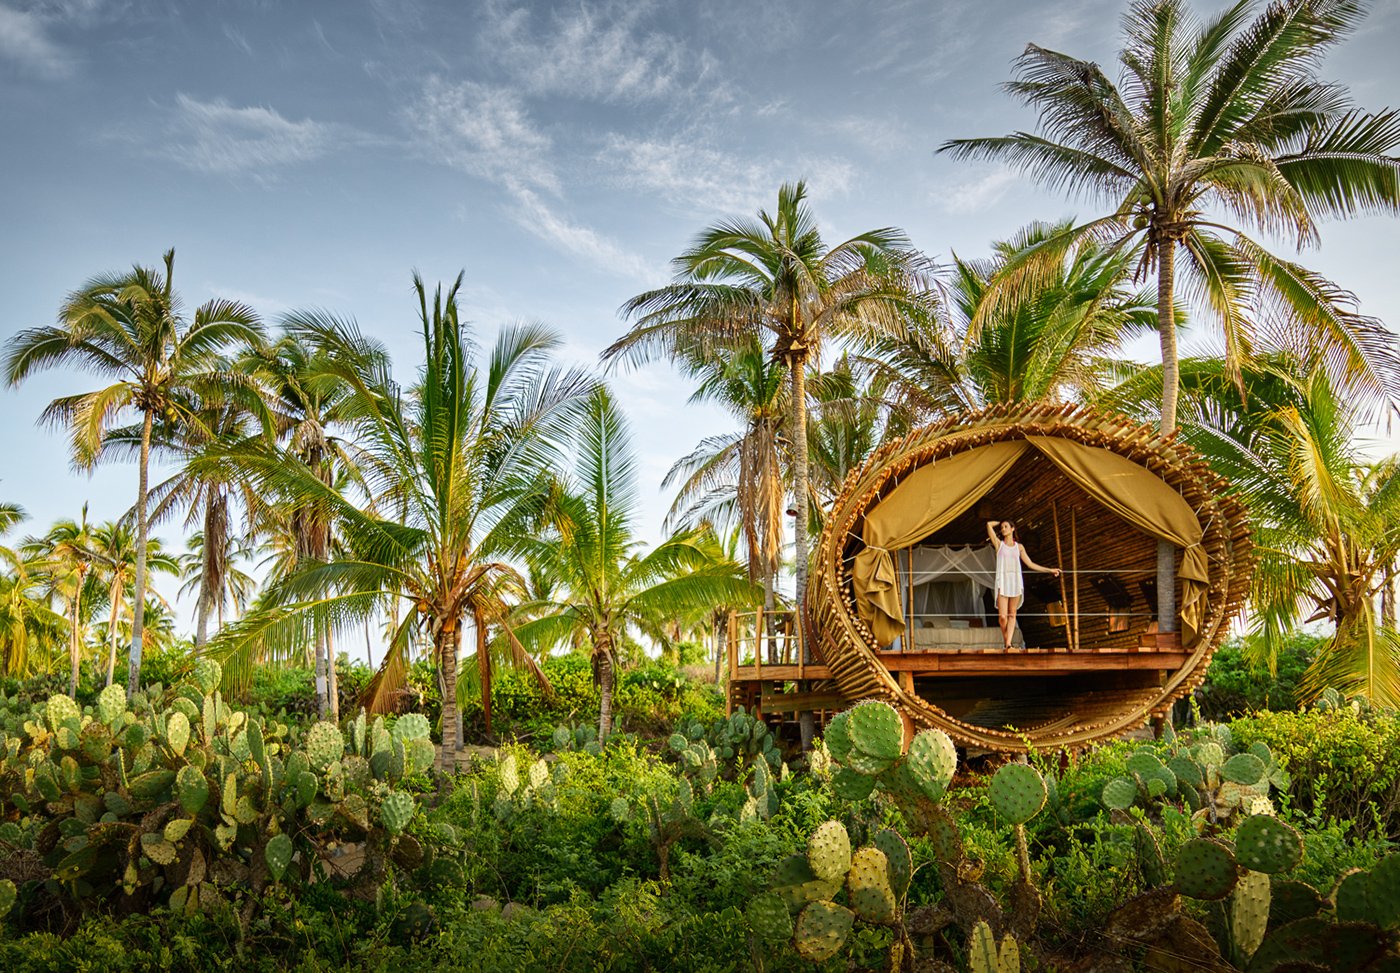 Отель в Мексике в джунглях. Бунгало в Тайланде. Шалаш на Бали. Playa Viva Мексика. Тропический оазис